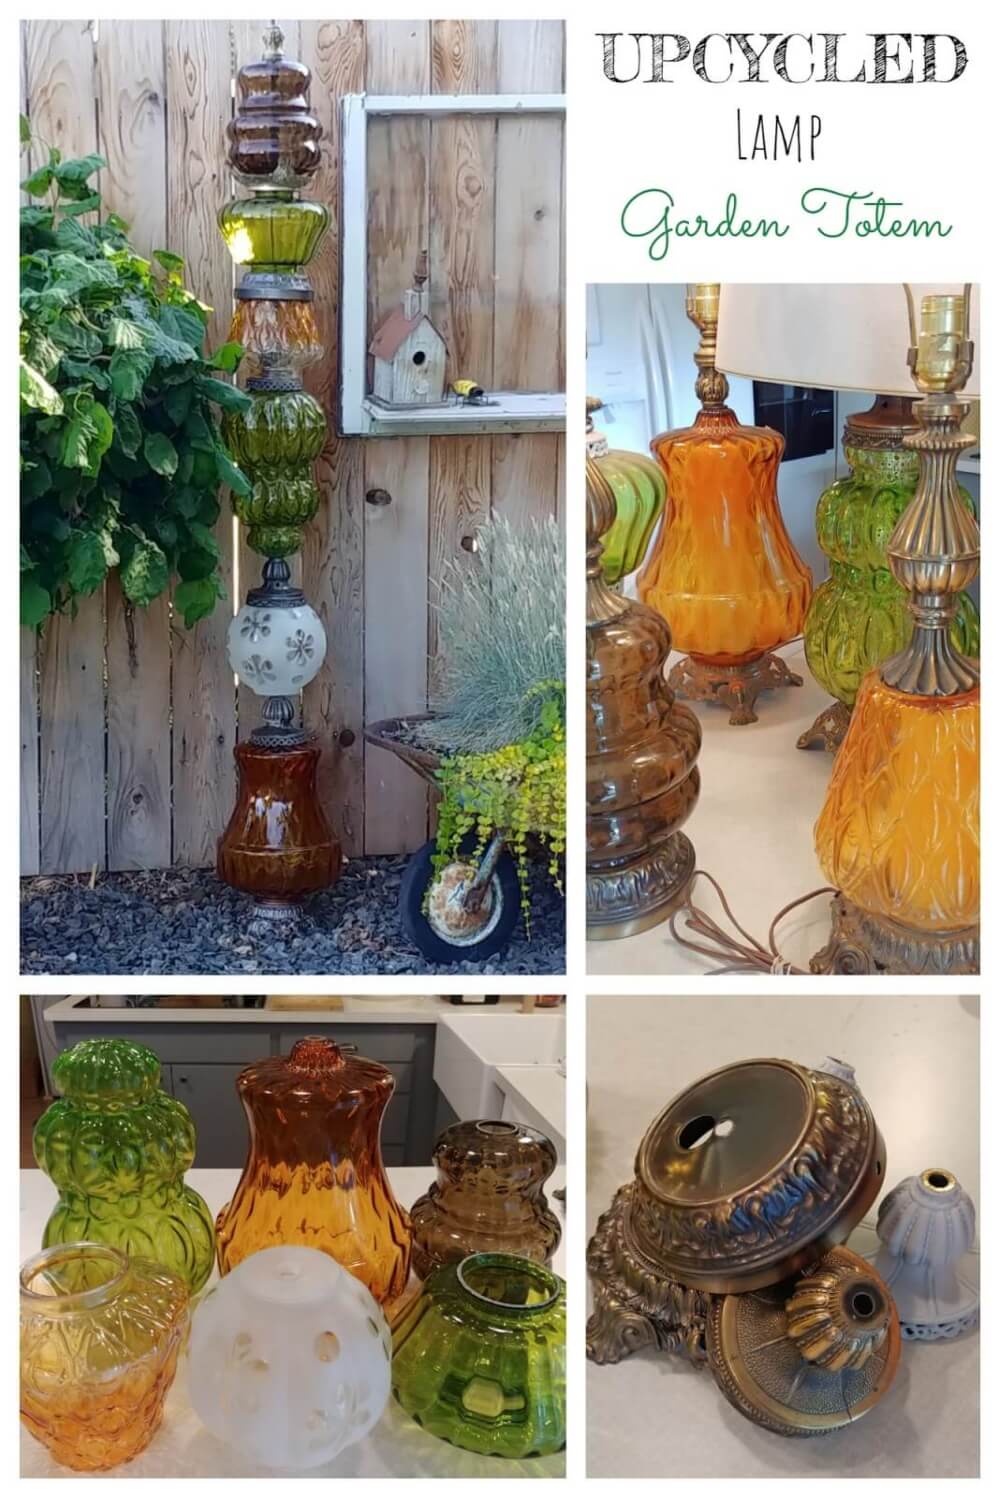 DIY Garden Totem From Repurposed Lamps